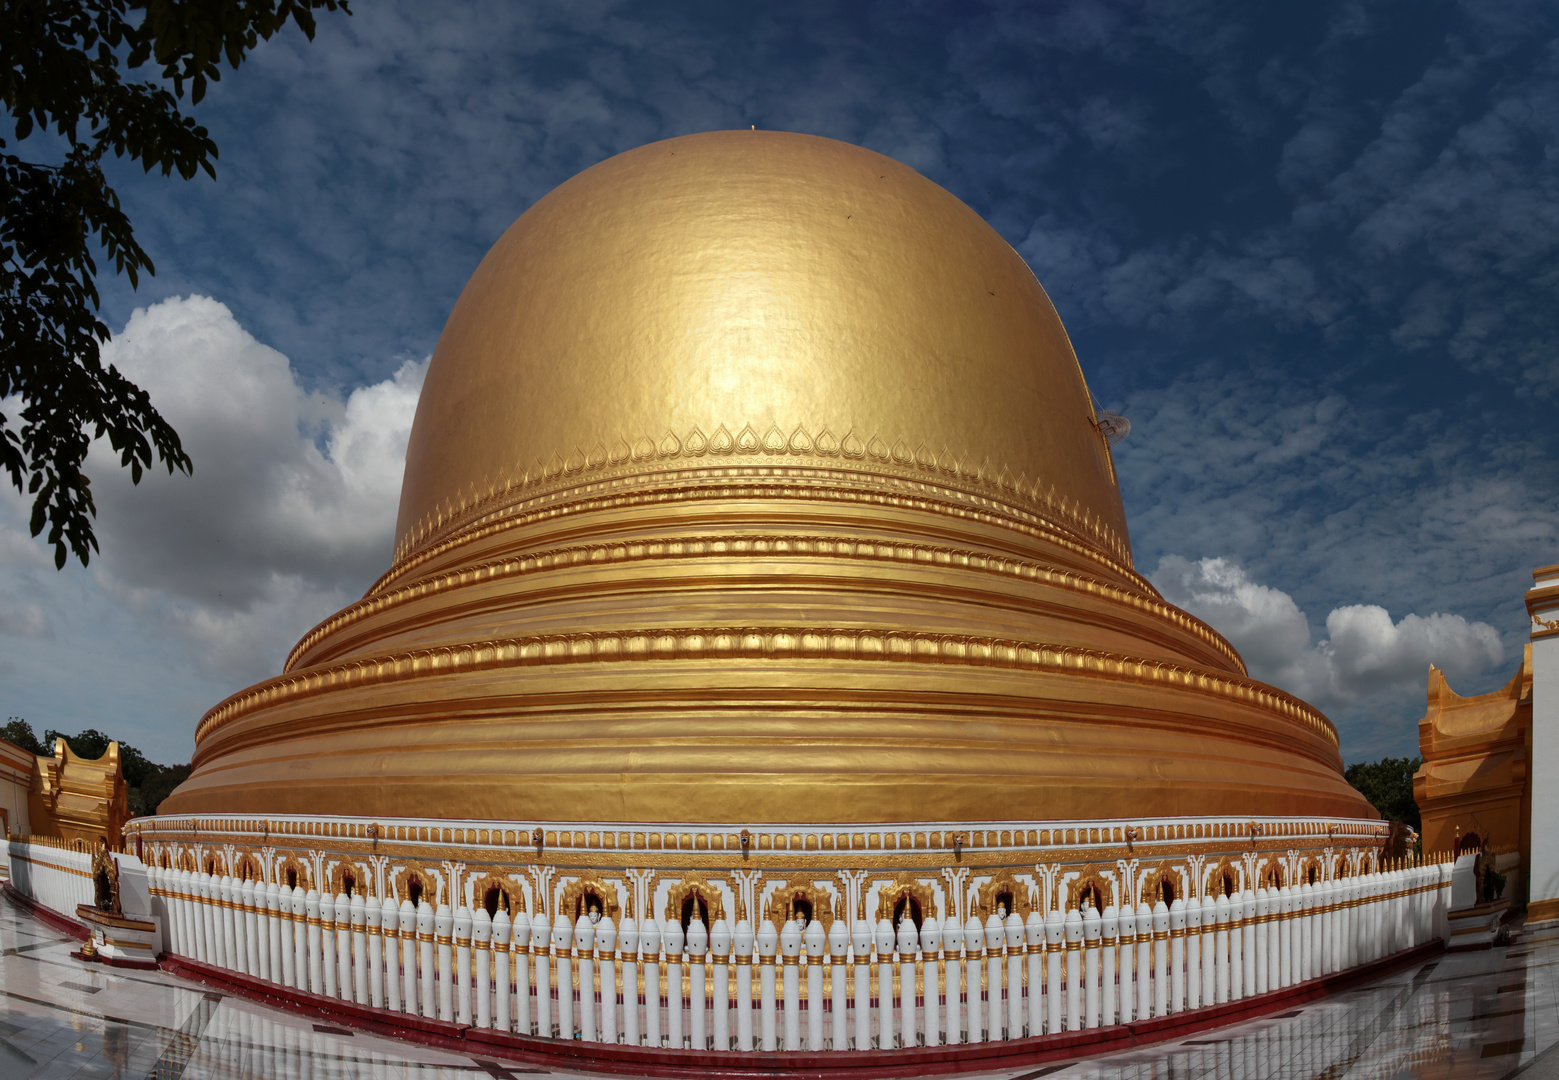 Kaung mu daw Pagoda